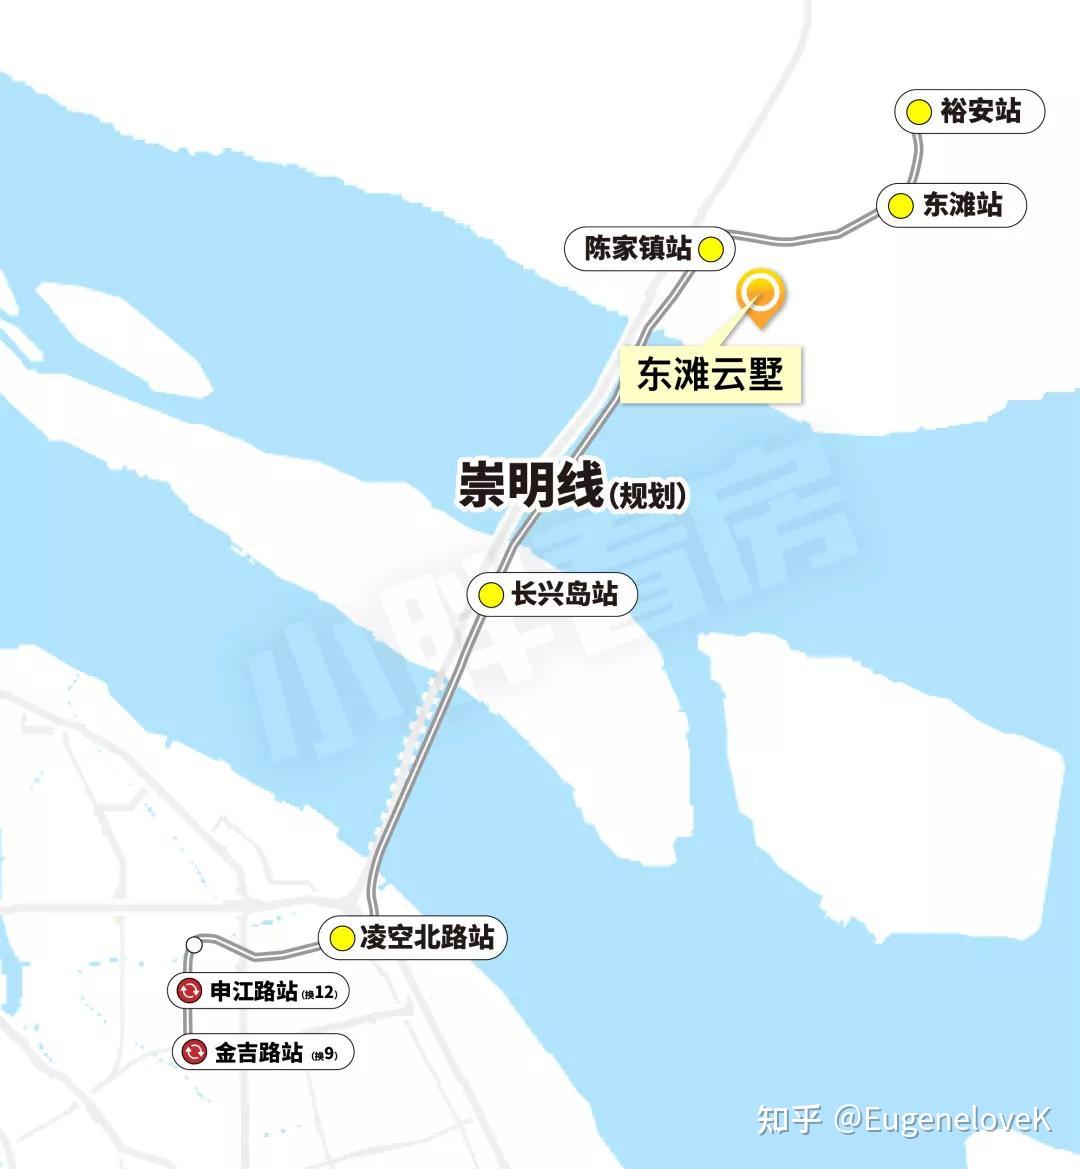 也就是说,崇明即将迎来"轨交时代,崇明岛正式被纳入上海轨交体系之中